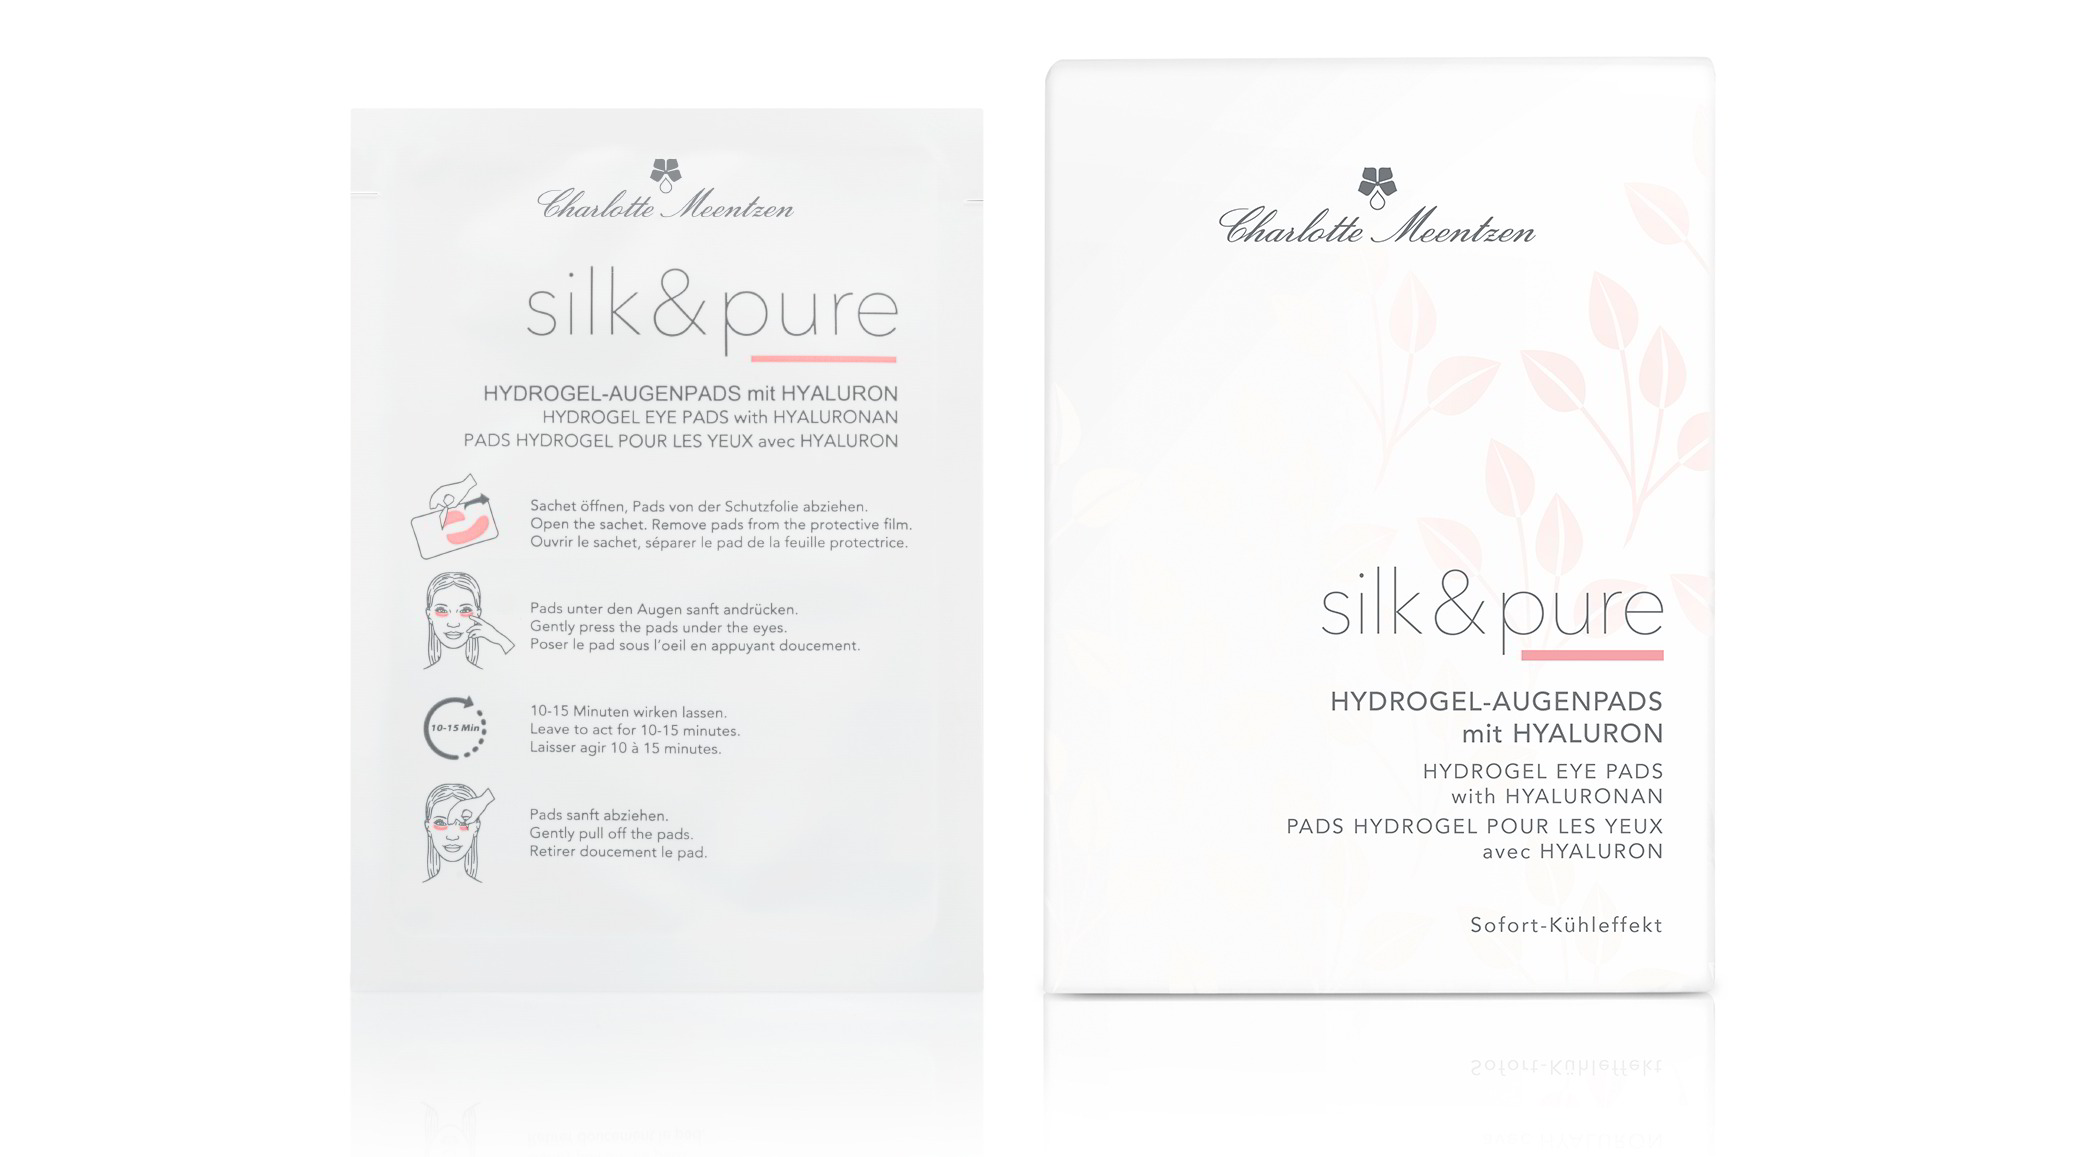 Silk & Pure Hydrogel-Augenpads mit Hyaluron